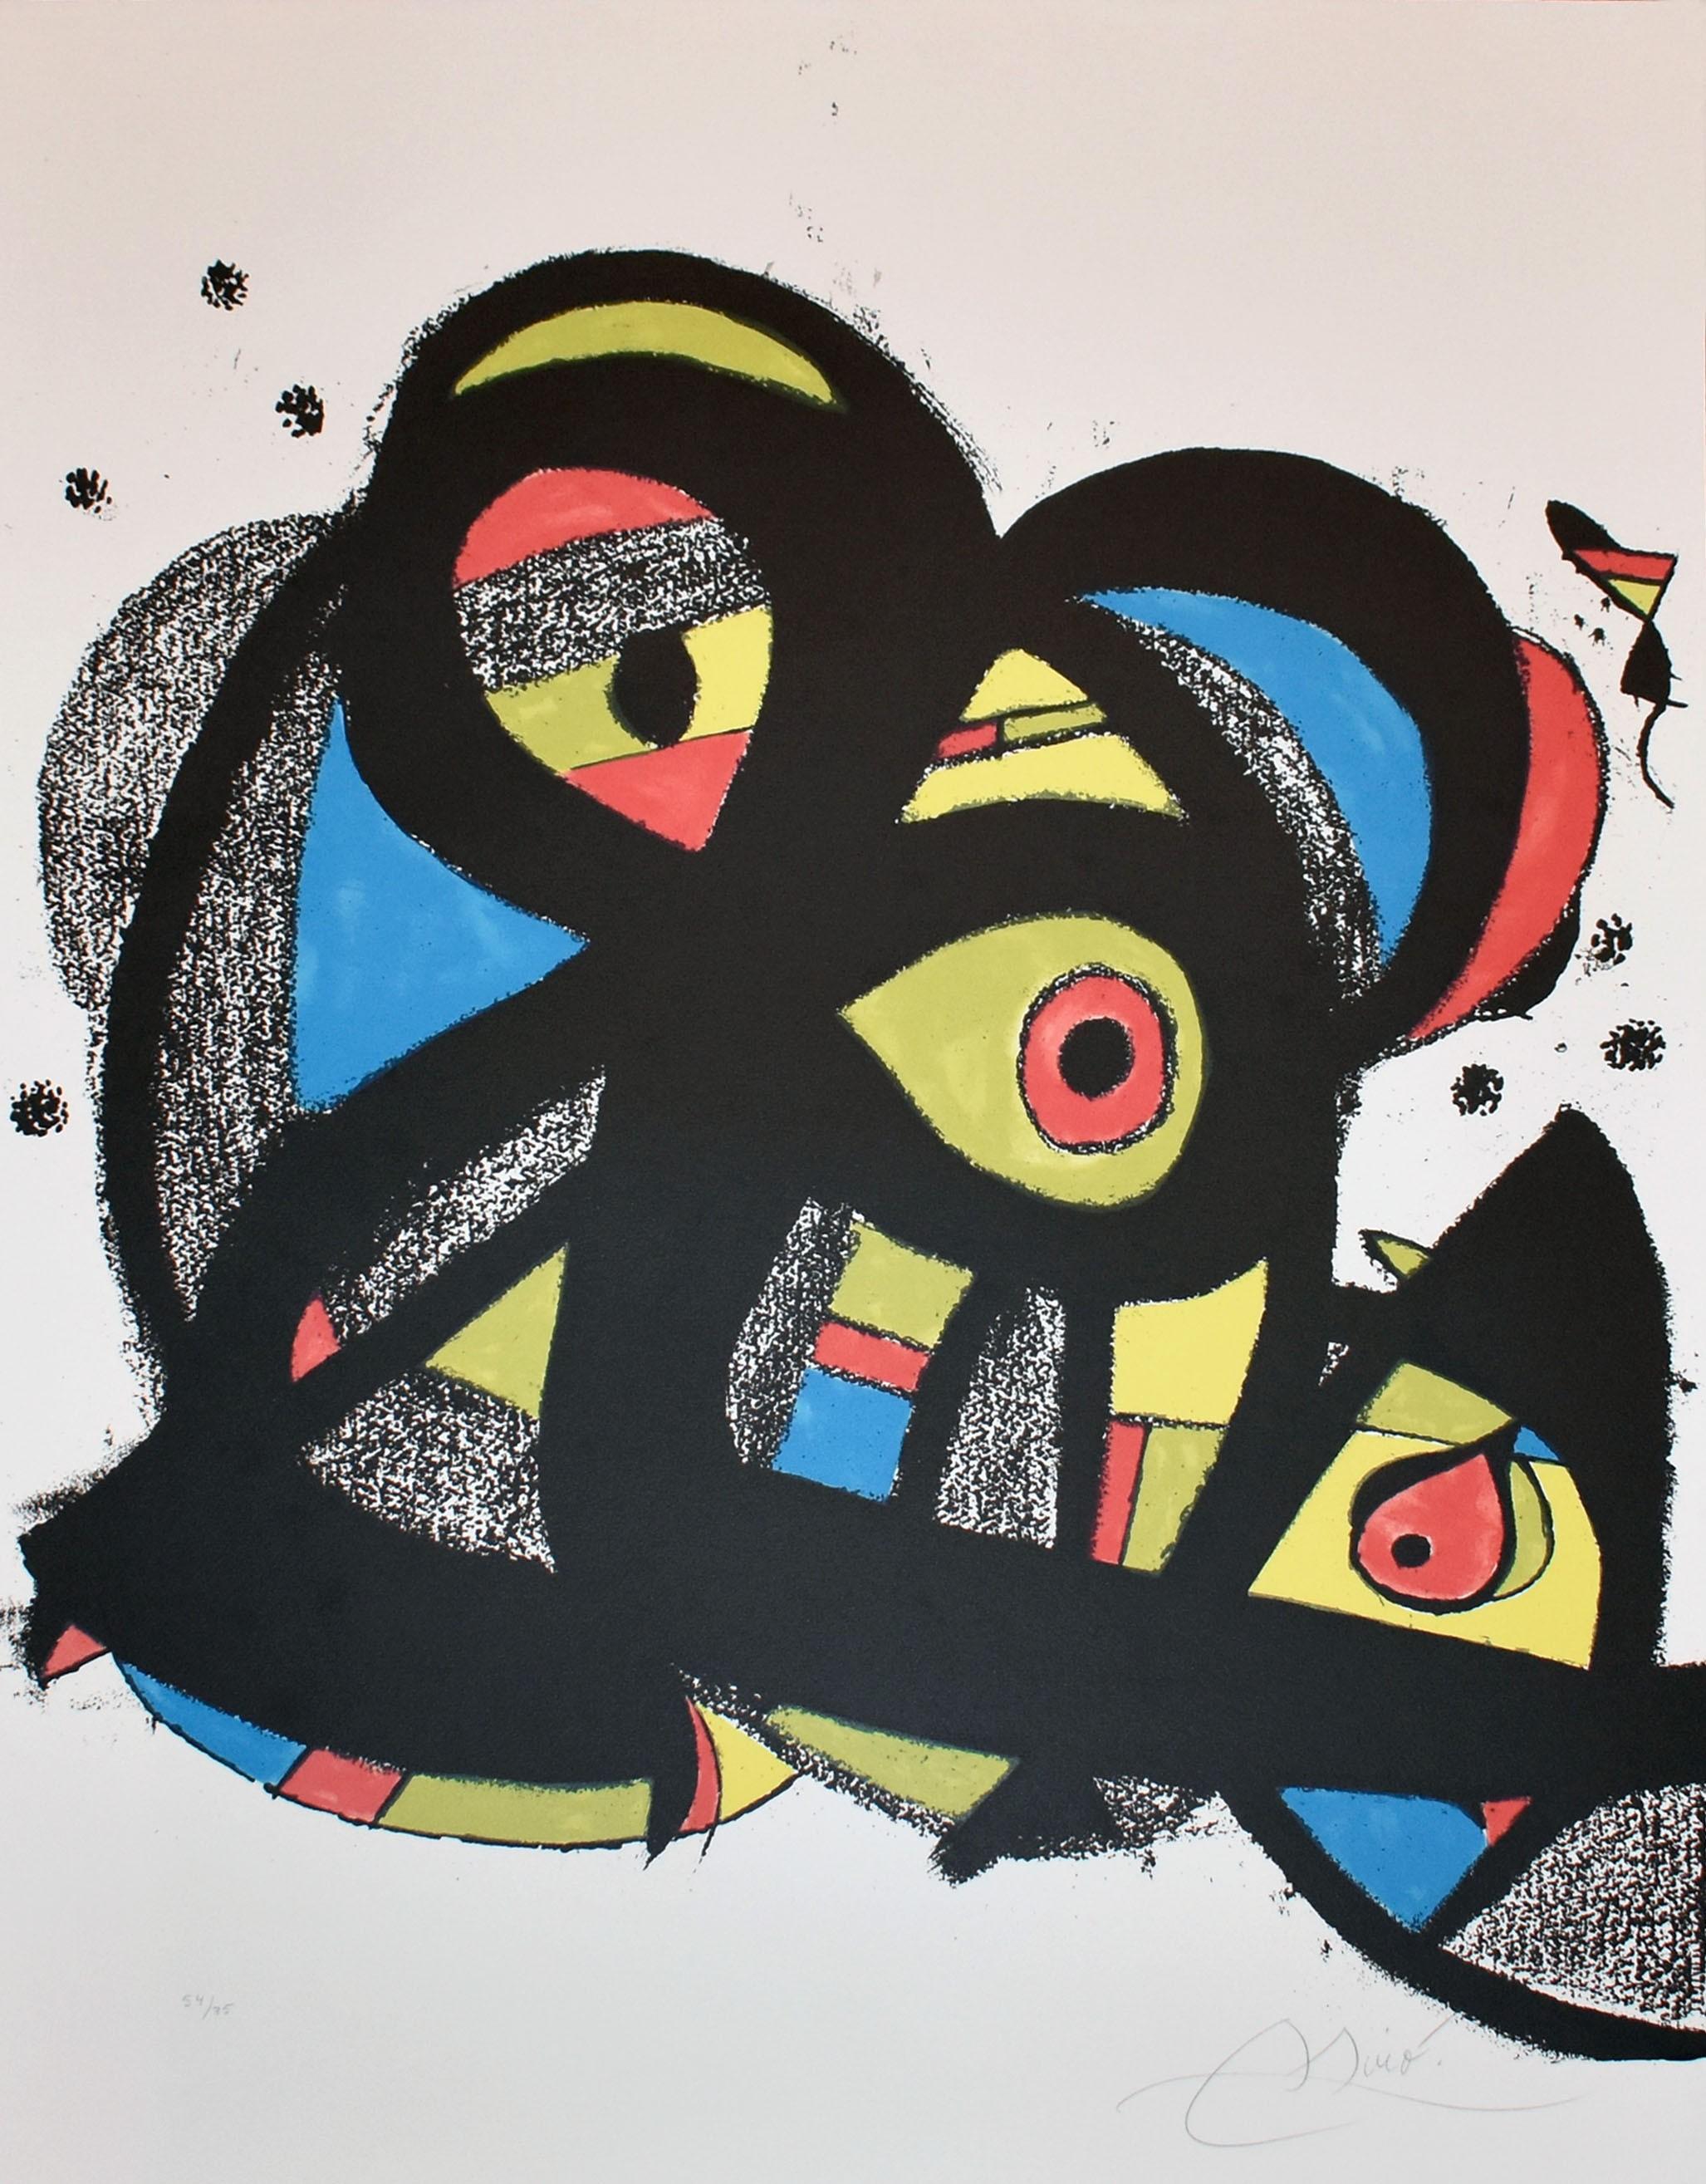 Escriptors en Llengua Catalana - Surrealist Print by Joan Miró